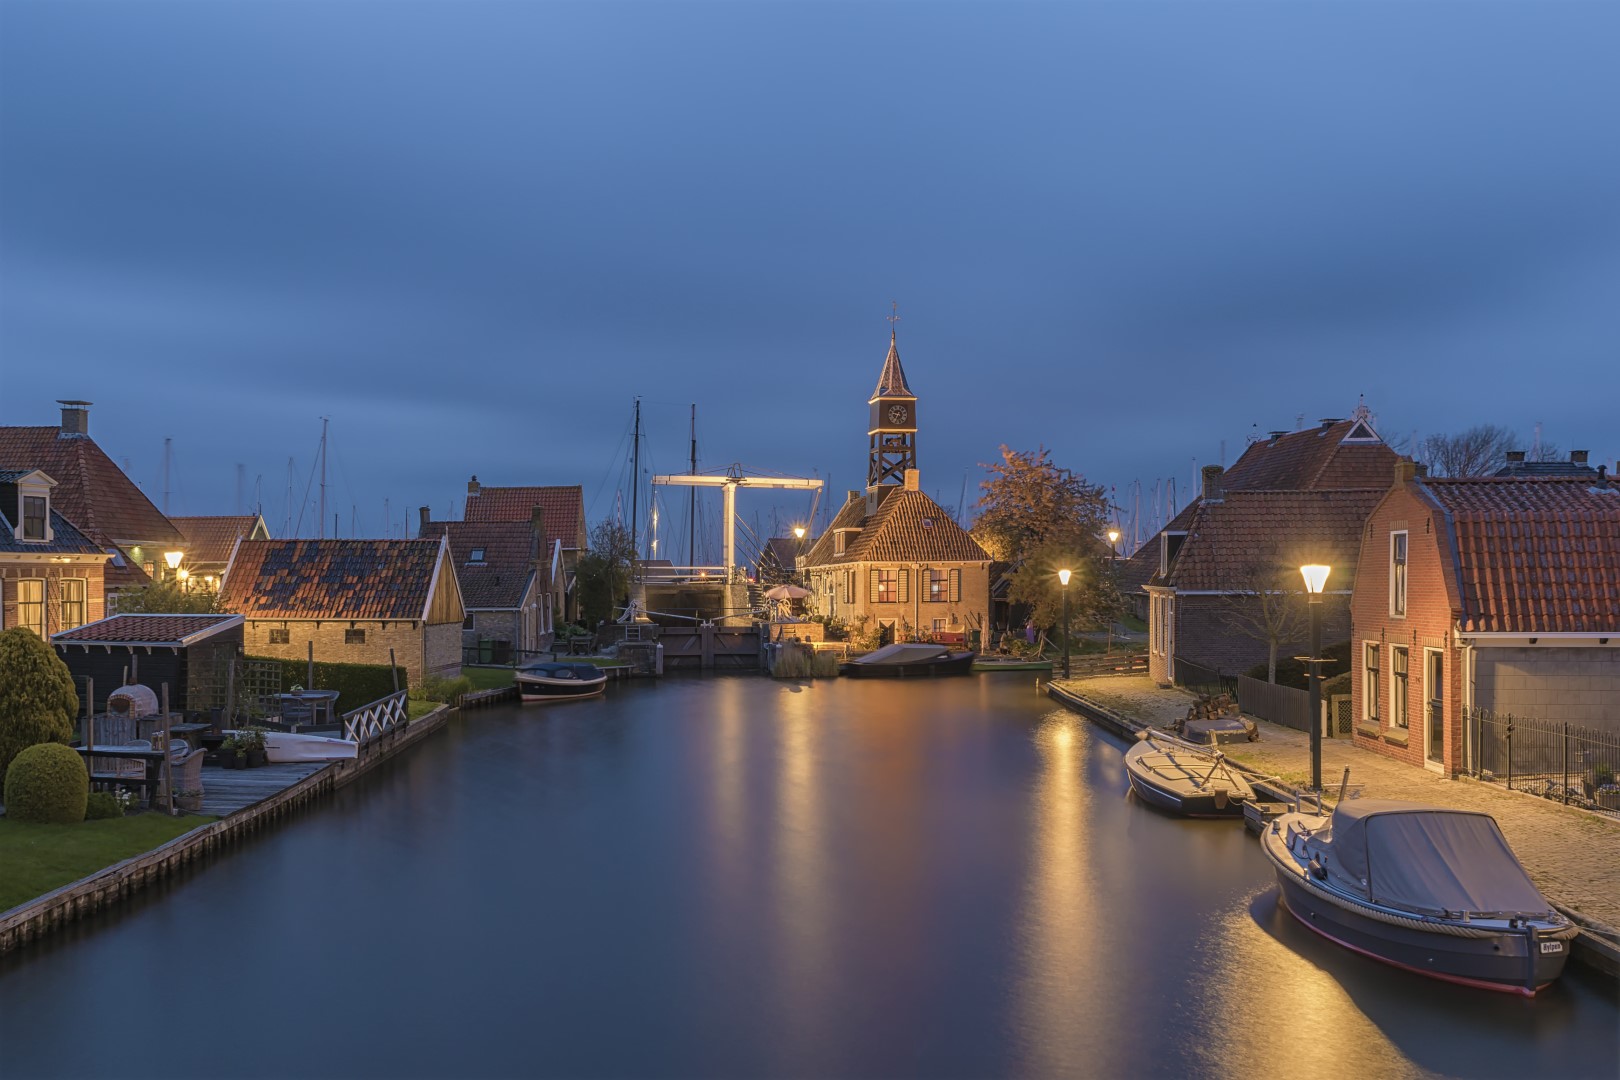 De Sluis van Hindeloopen (Friesland, Nederland) tijdens de avond. Een mooi stukje van dit even zo fraaie stadje. Alles ademt nostalgie.